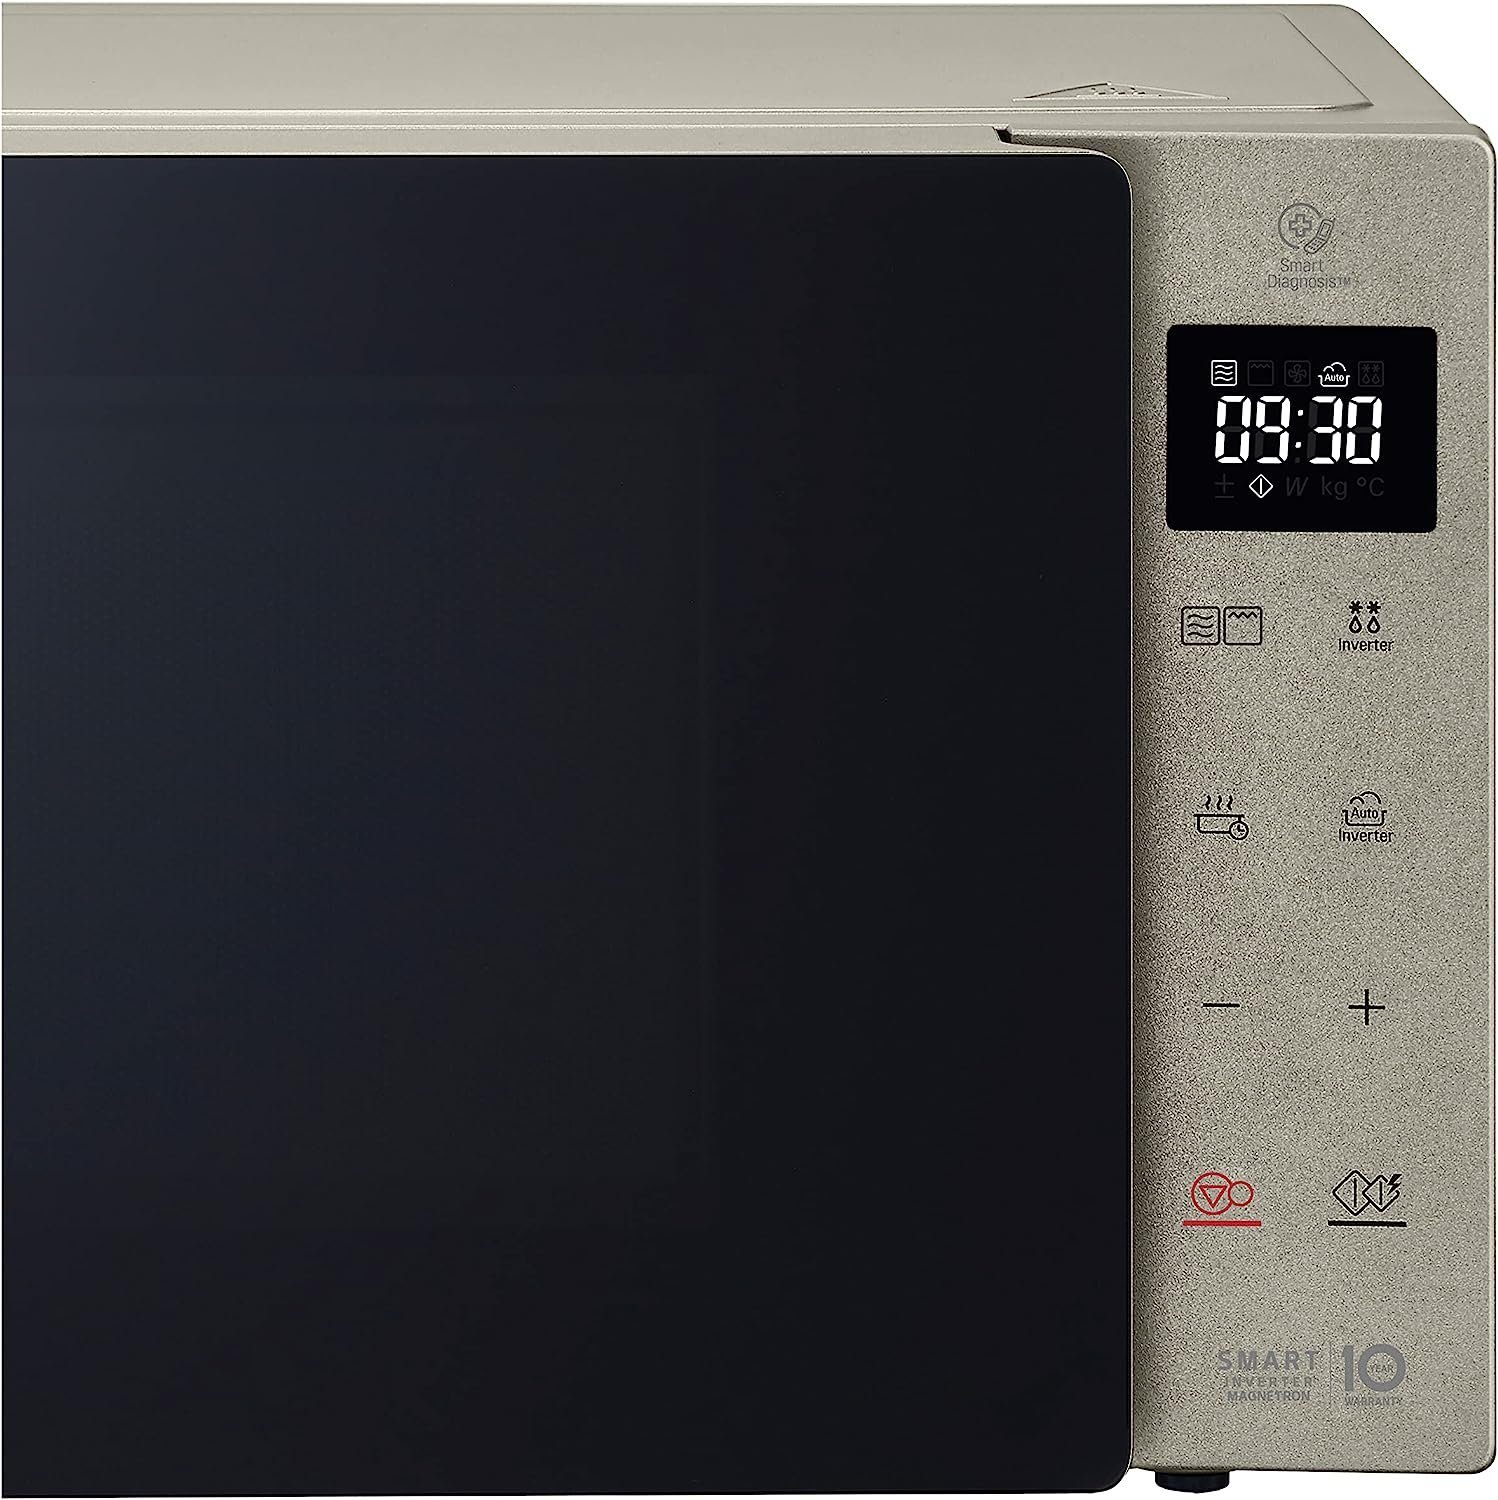 Grill MH6535NBS Touchdisplay, Garprogramme 25L Digitaldisplay 25,00 Inverter Umluft, LG l, Mikrowelle Grillfunktion, mit 1000W, Smart Gewichtsautomatik mit Mikrowelle